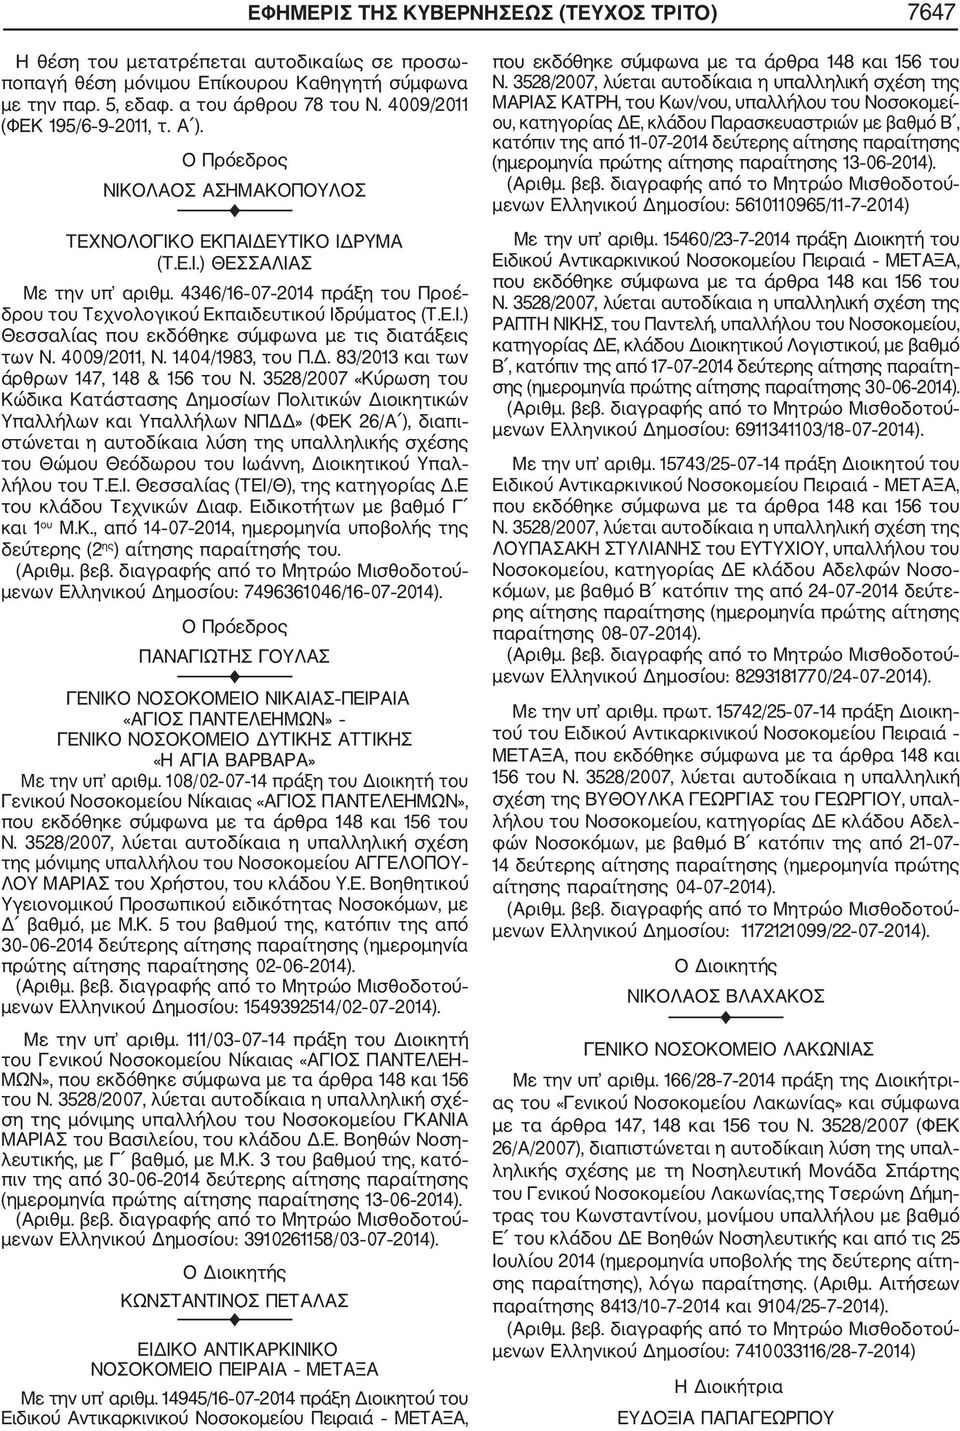 4346/16 07 2014 πράξη του Προέ δρου του Τεχνολογικού Εκπαιδευτικού Ιδρύματος (Τ.Ε.Ι.) Θεσσαλίας που εκδόθηκε σύμφωνα με τις διατάξεις των Ν. 4009/2011, Ν. 1404/1983, του Π.Δ.